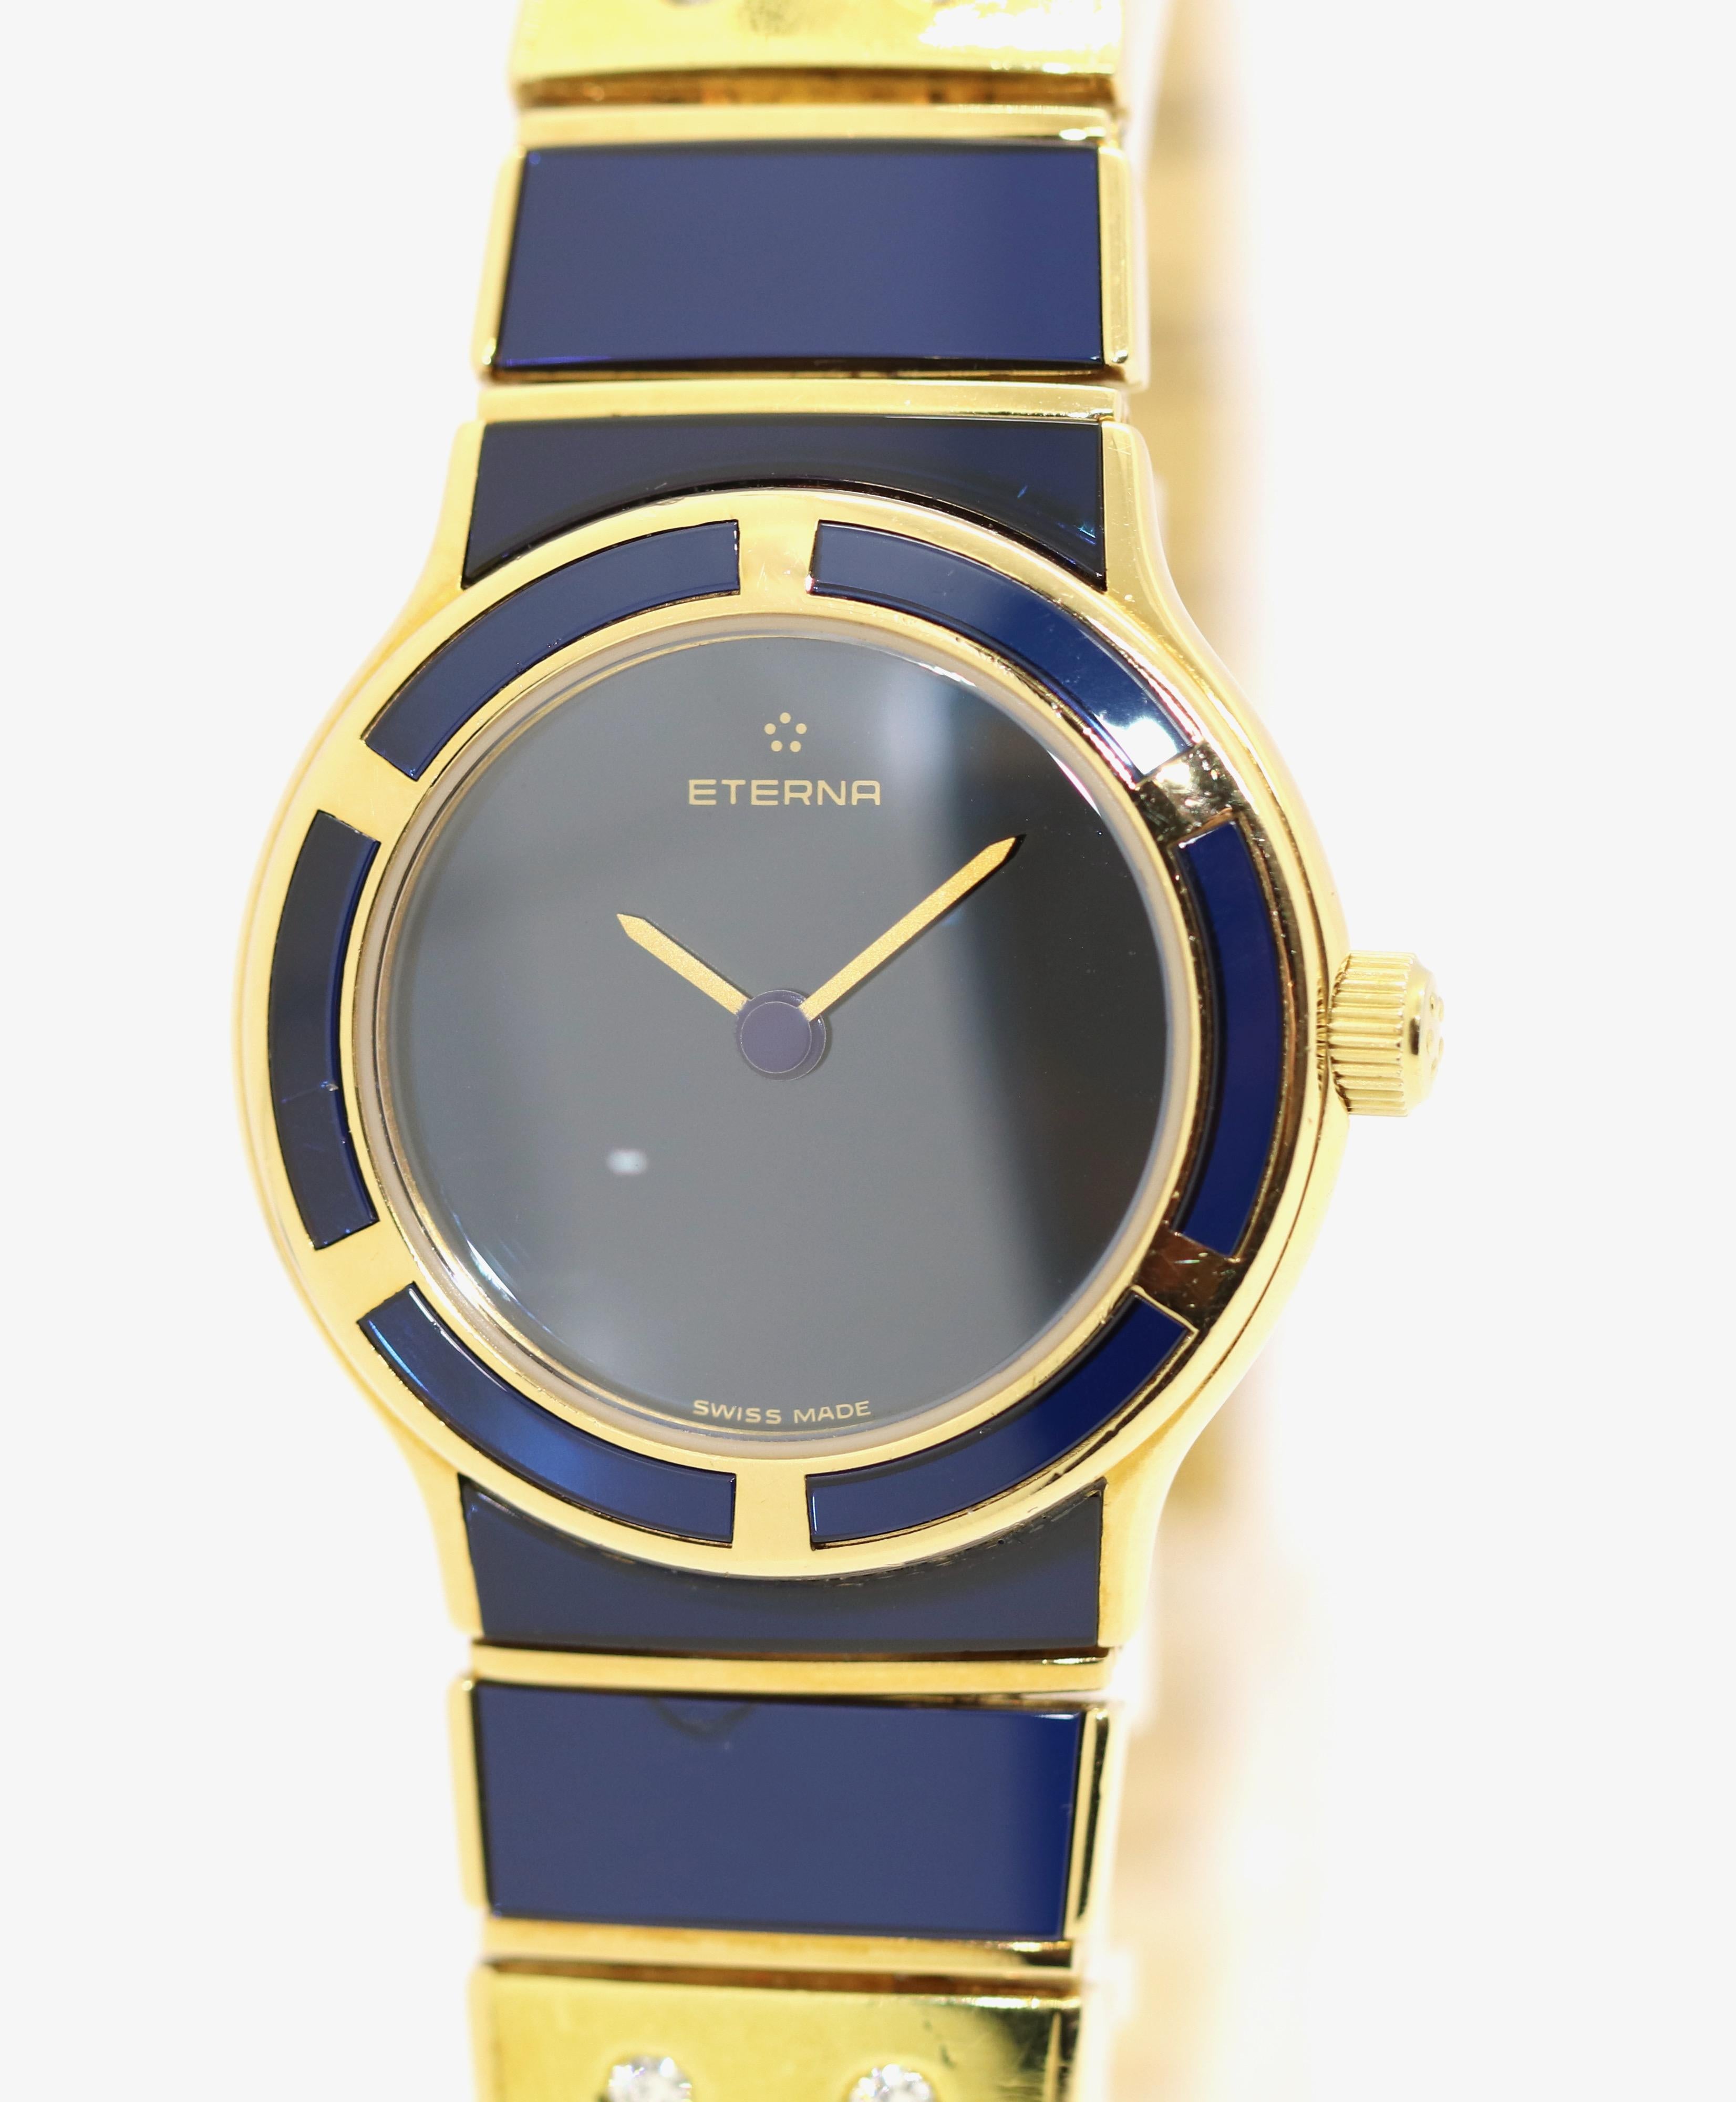 Eine sehr seltene und schöne Damenuhr. Armband und Lünette mit Saphir-Intarsien.
Das Armband ist zusätzlich mit vier Diamanten besetzt.
Gehäuse und Armband 18 Karat massives Gold.

Besonderes Merkmal: Diese Uhr hat die einzigartige Seriennummer